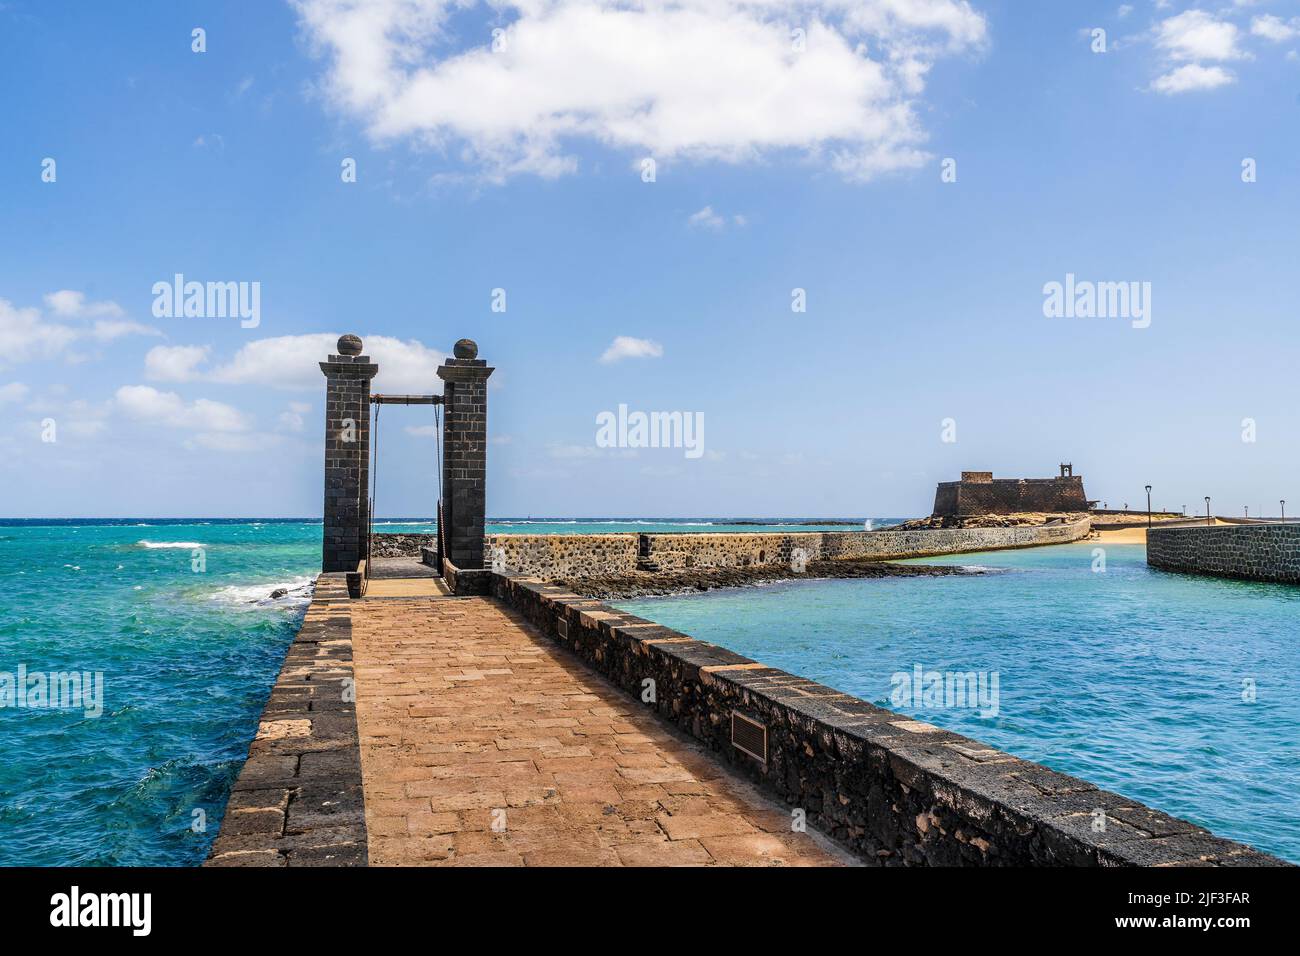 Histórico Castillo de San Gabriel con el Puente de las Pelotas que conduce a él, Arrecife, Lanzarote, Islas Canarias, España Foto de stock